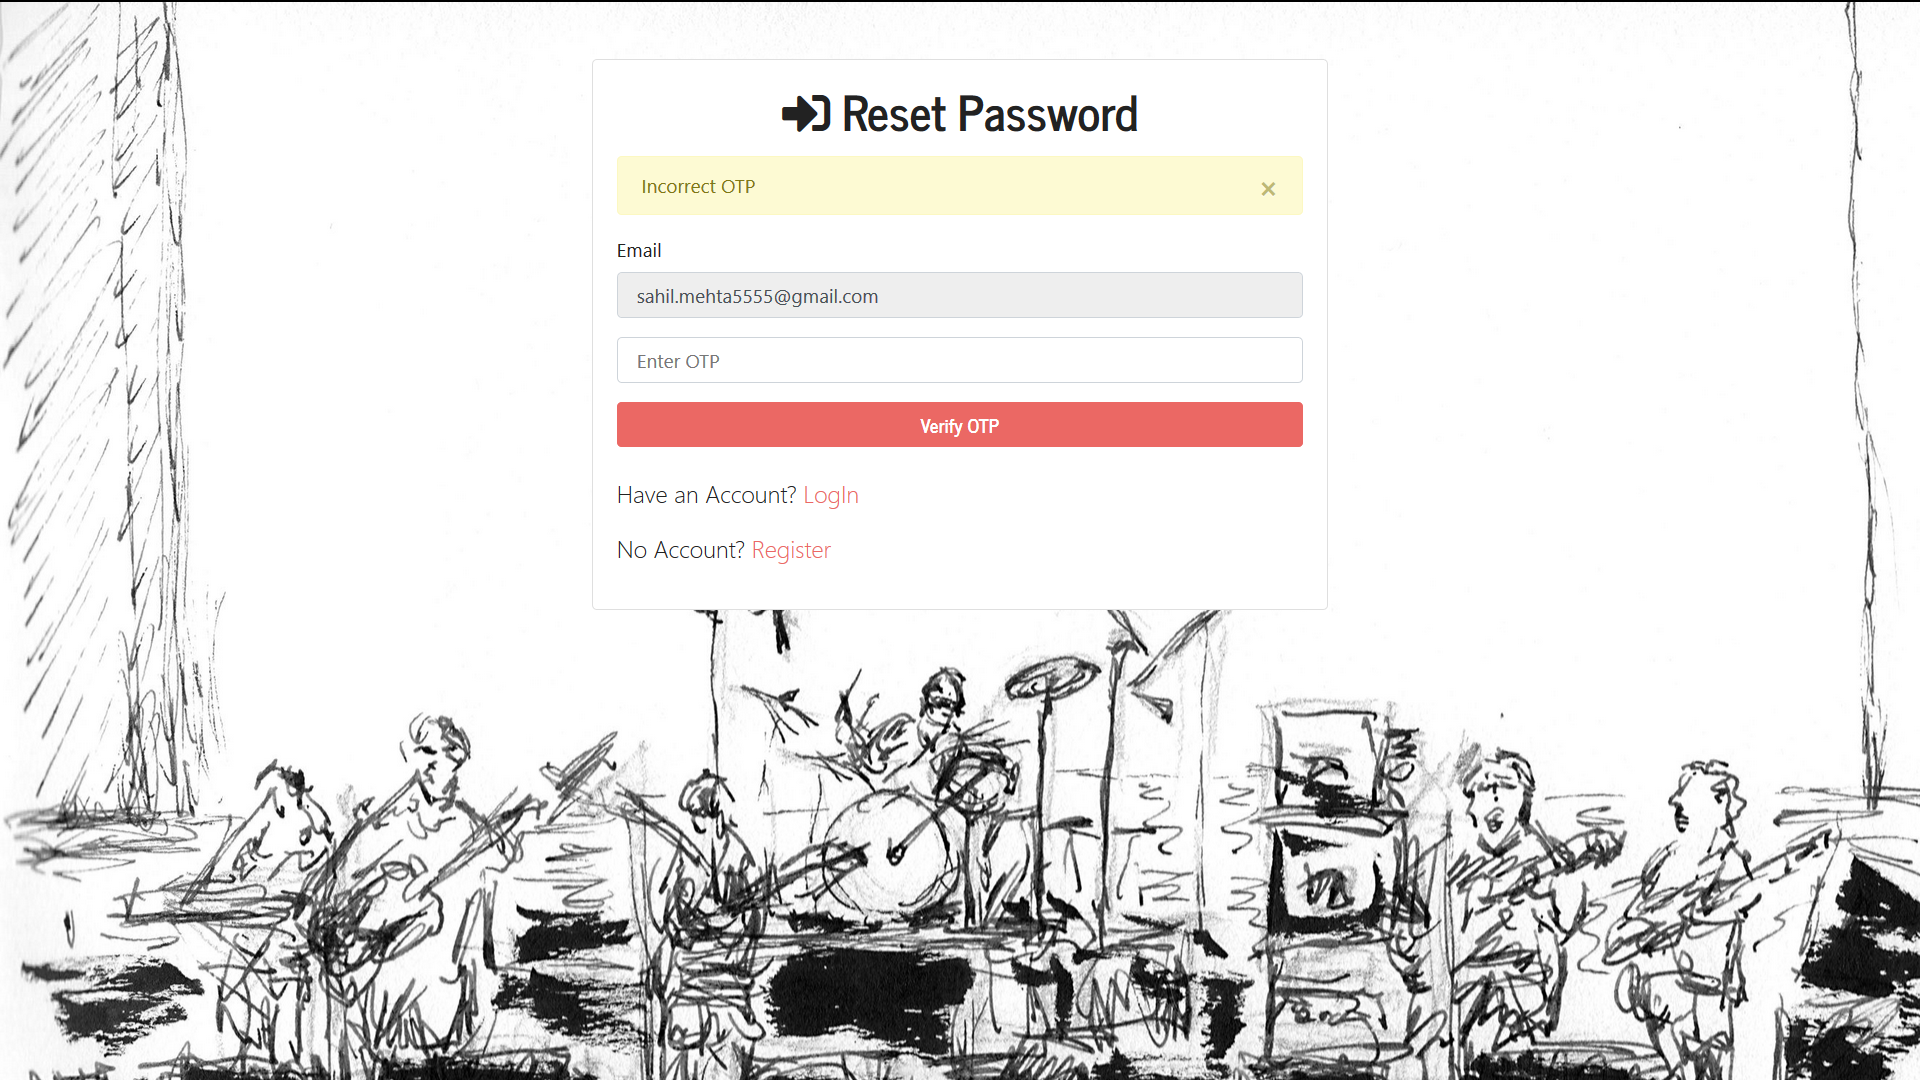 Reset-password-incorrect-otp